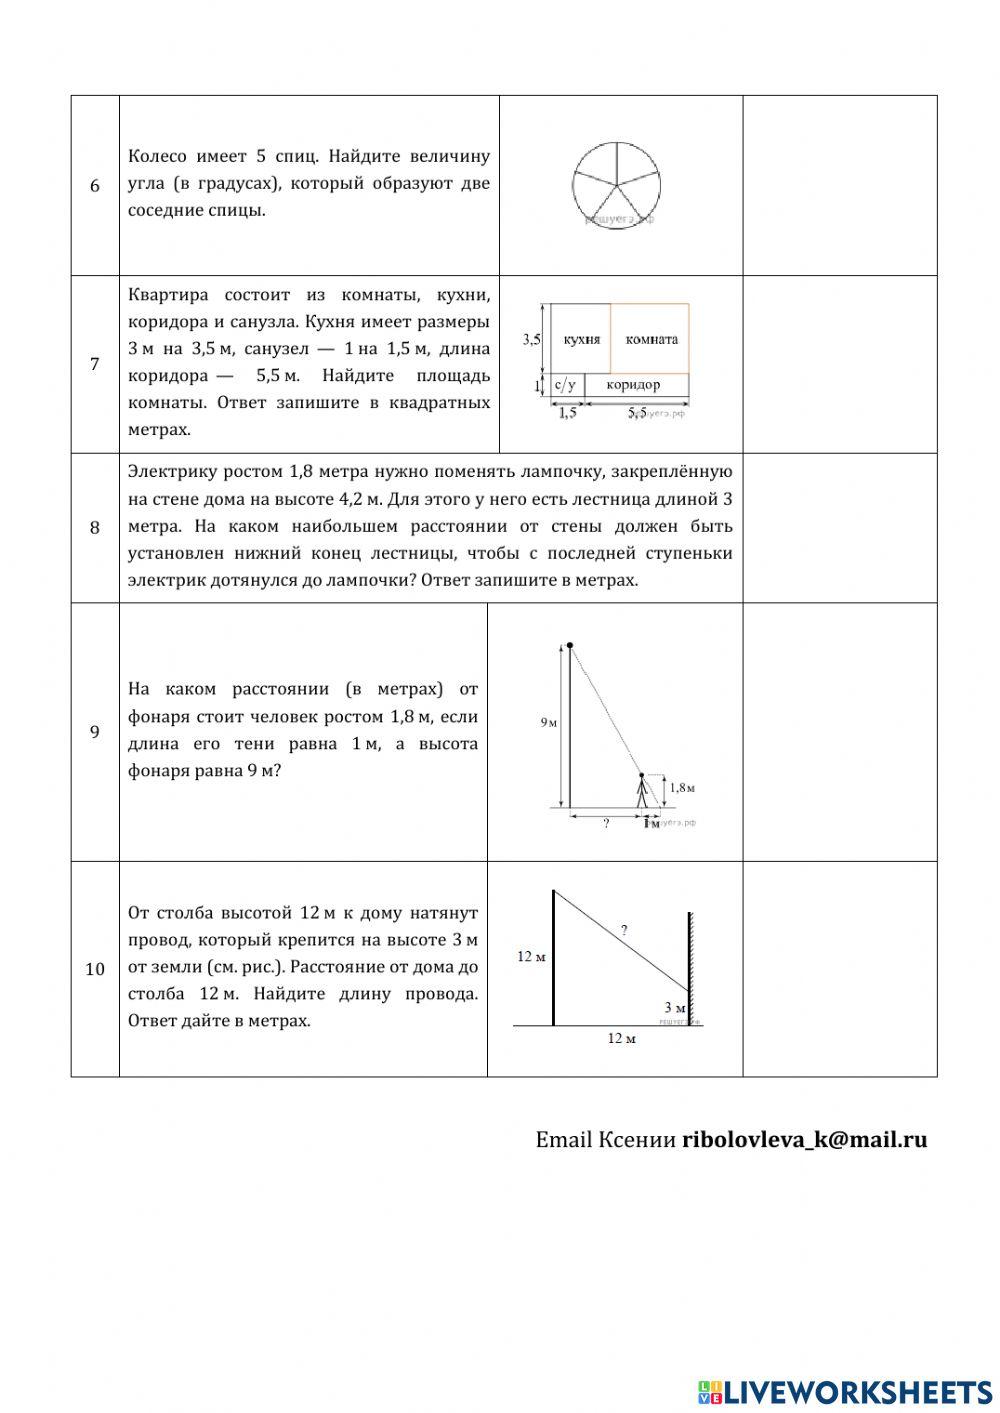 ДЗ№5: логарифмические уравнения и прикладная геометрия.